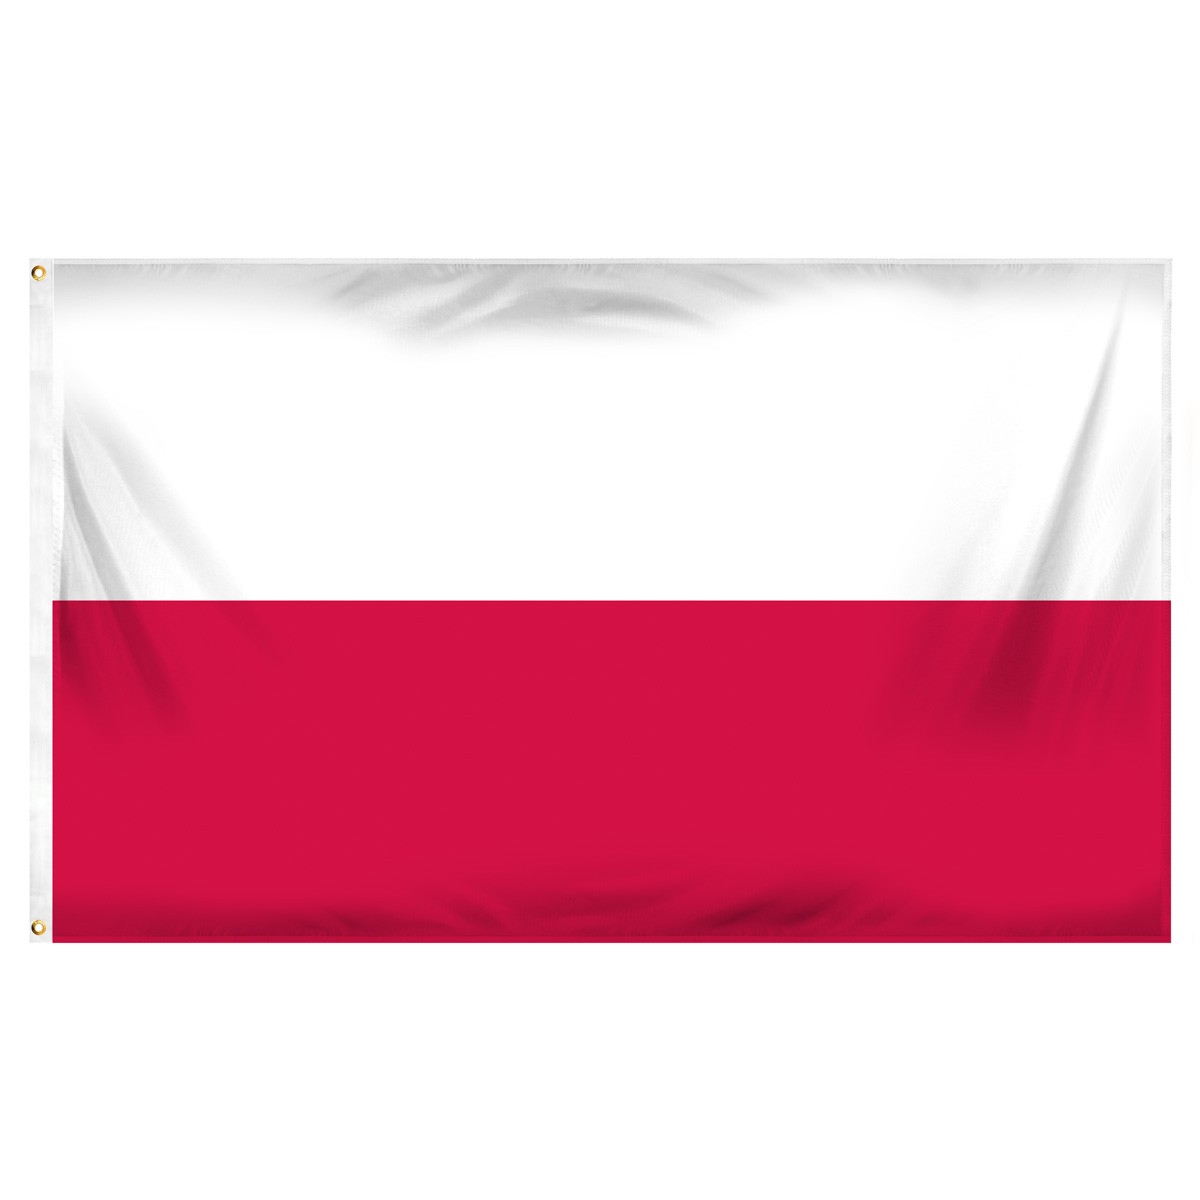 Poland Executive Flags